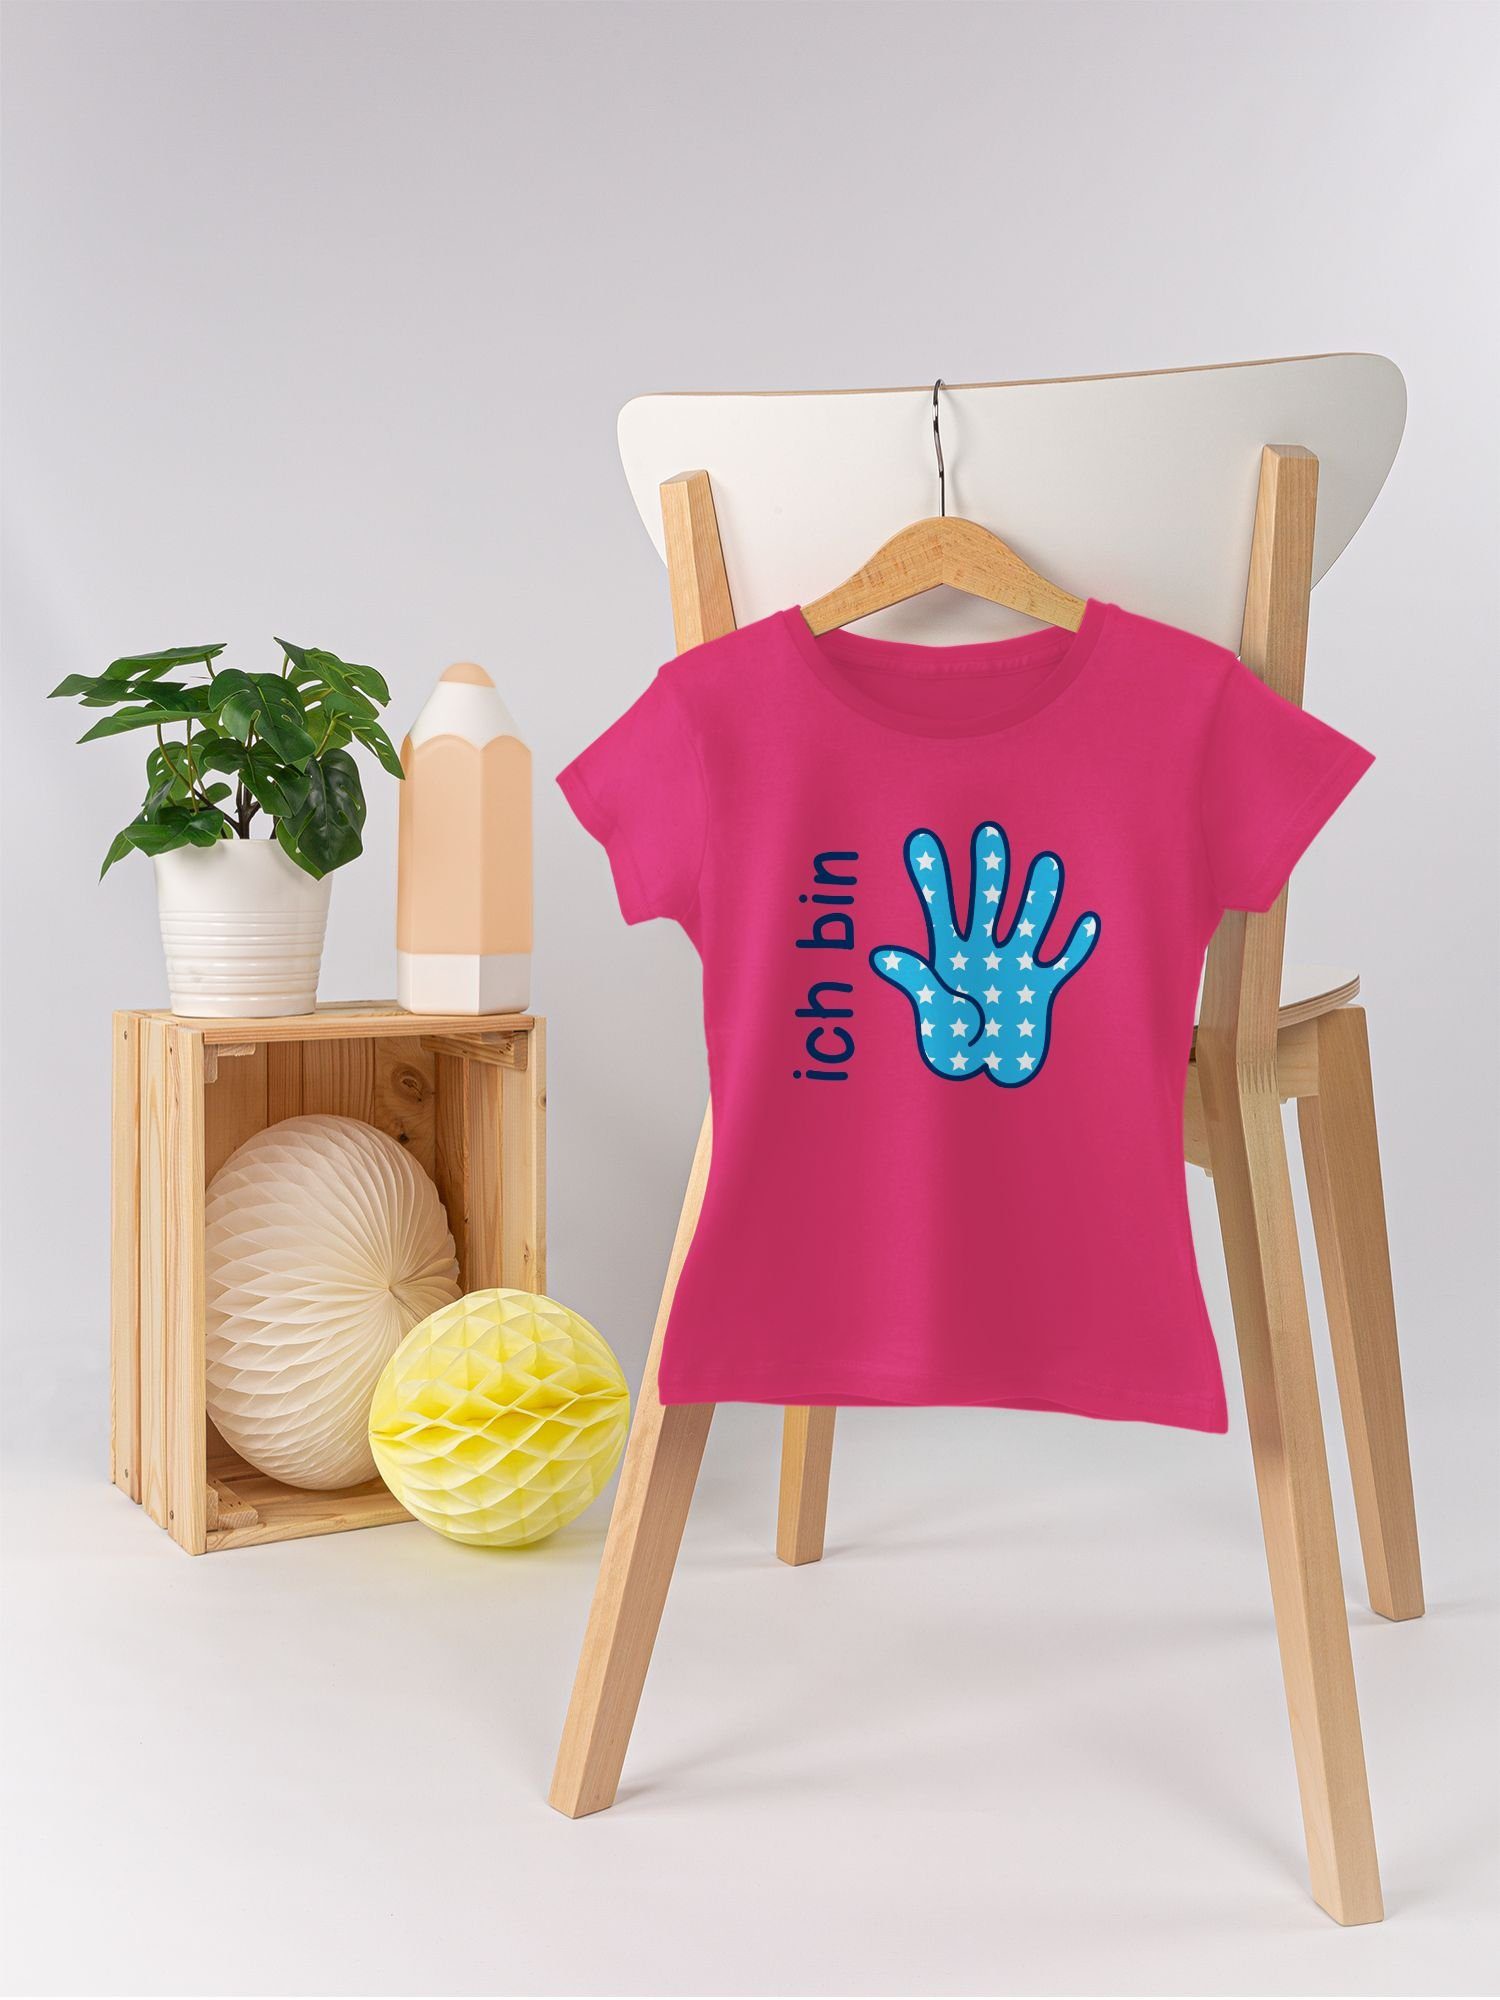 blau 5. Fuchsia 1 T-Shirt Zeichensprache bin fünf Shirtracer Ich Geburtstag